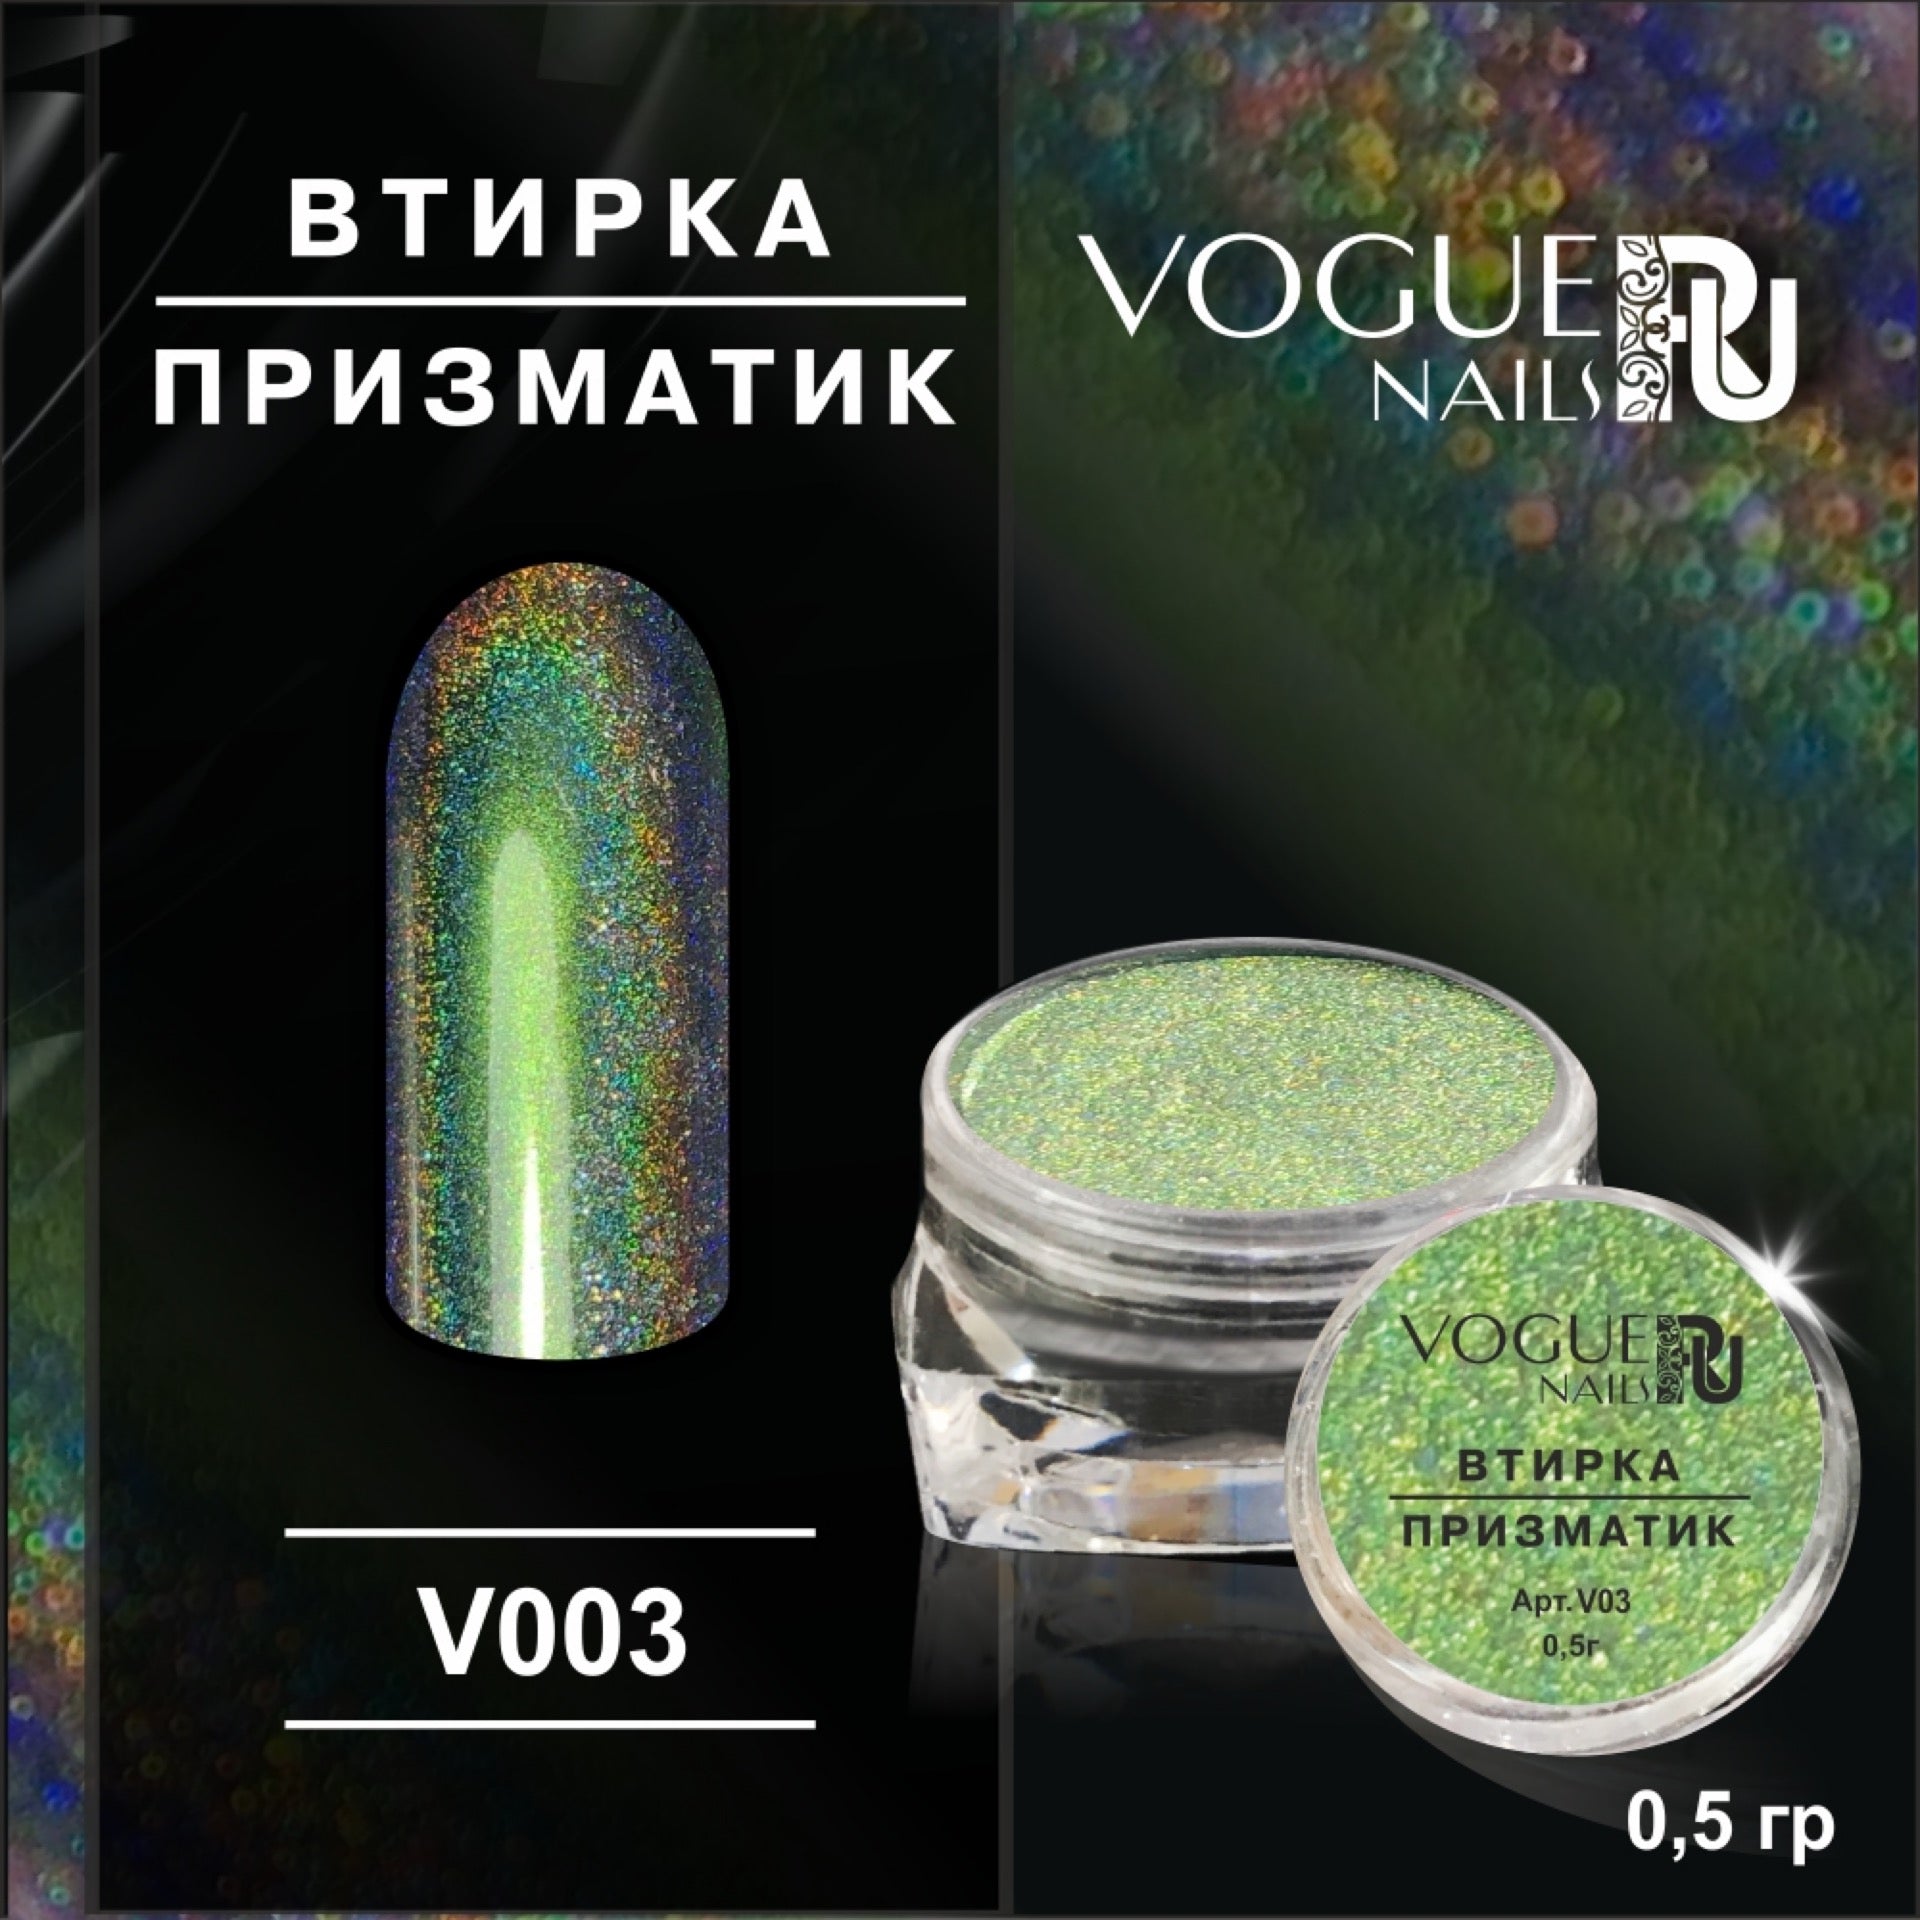 Powder Prismatic №3 Vogue Nails 0.5g 